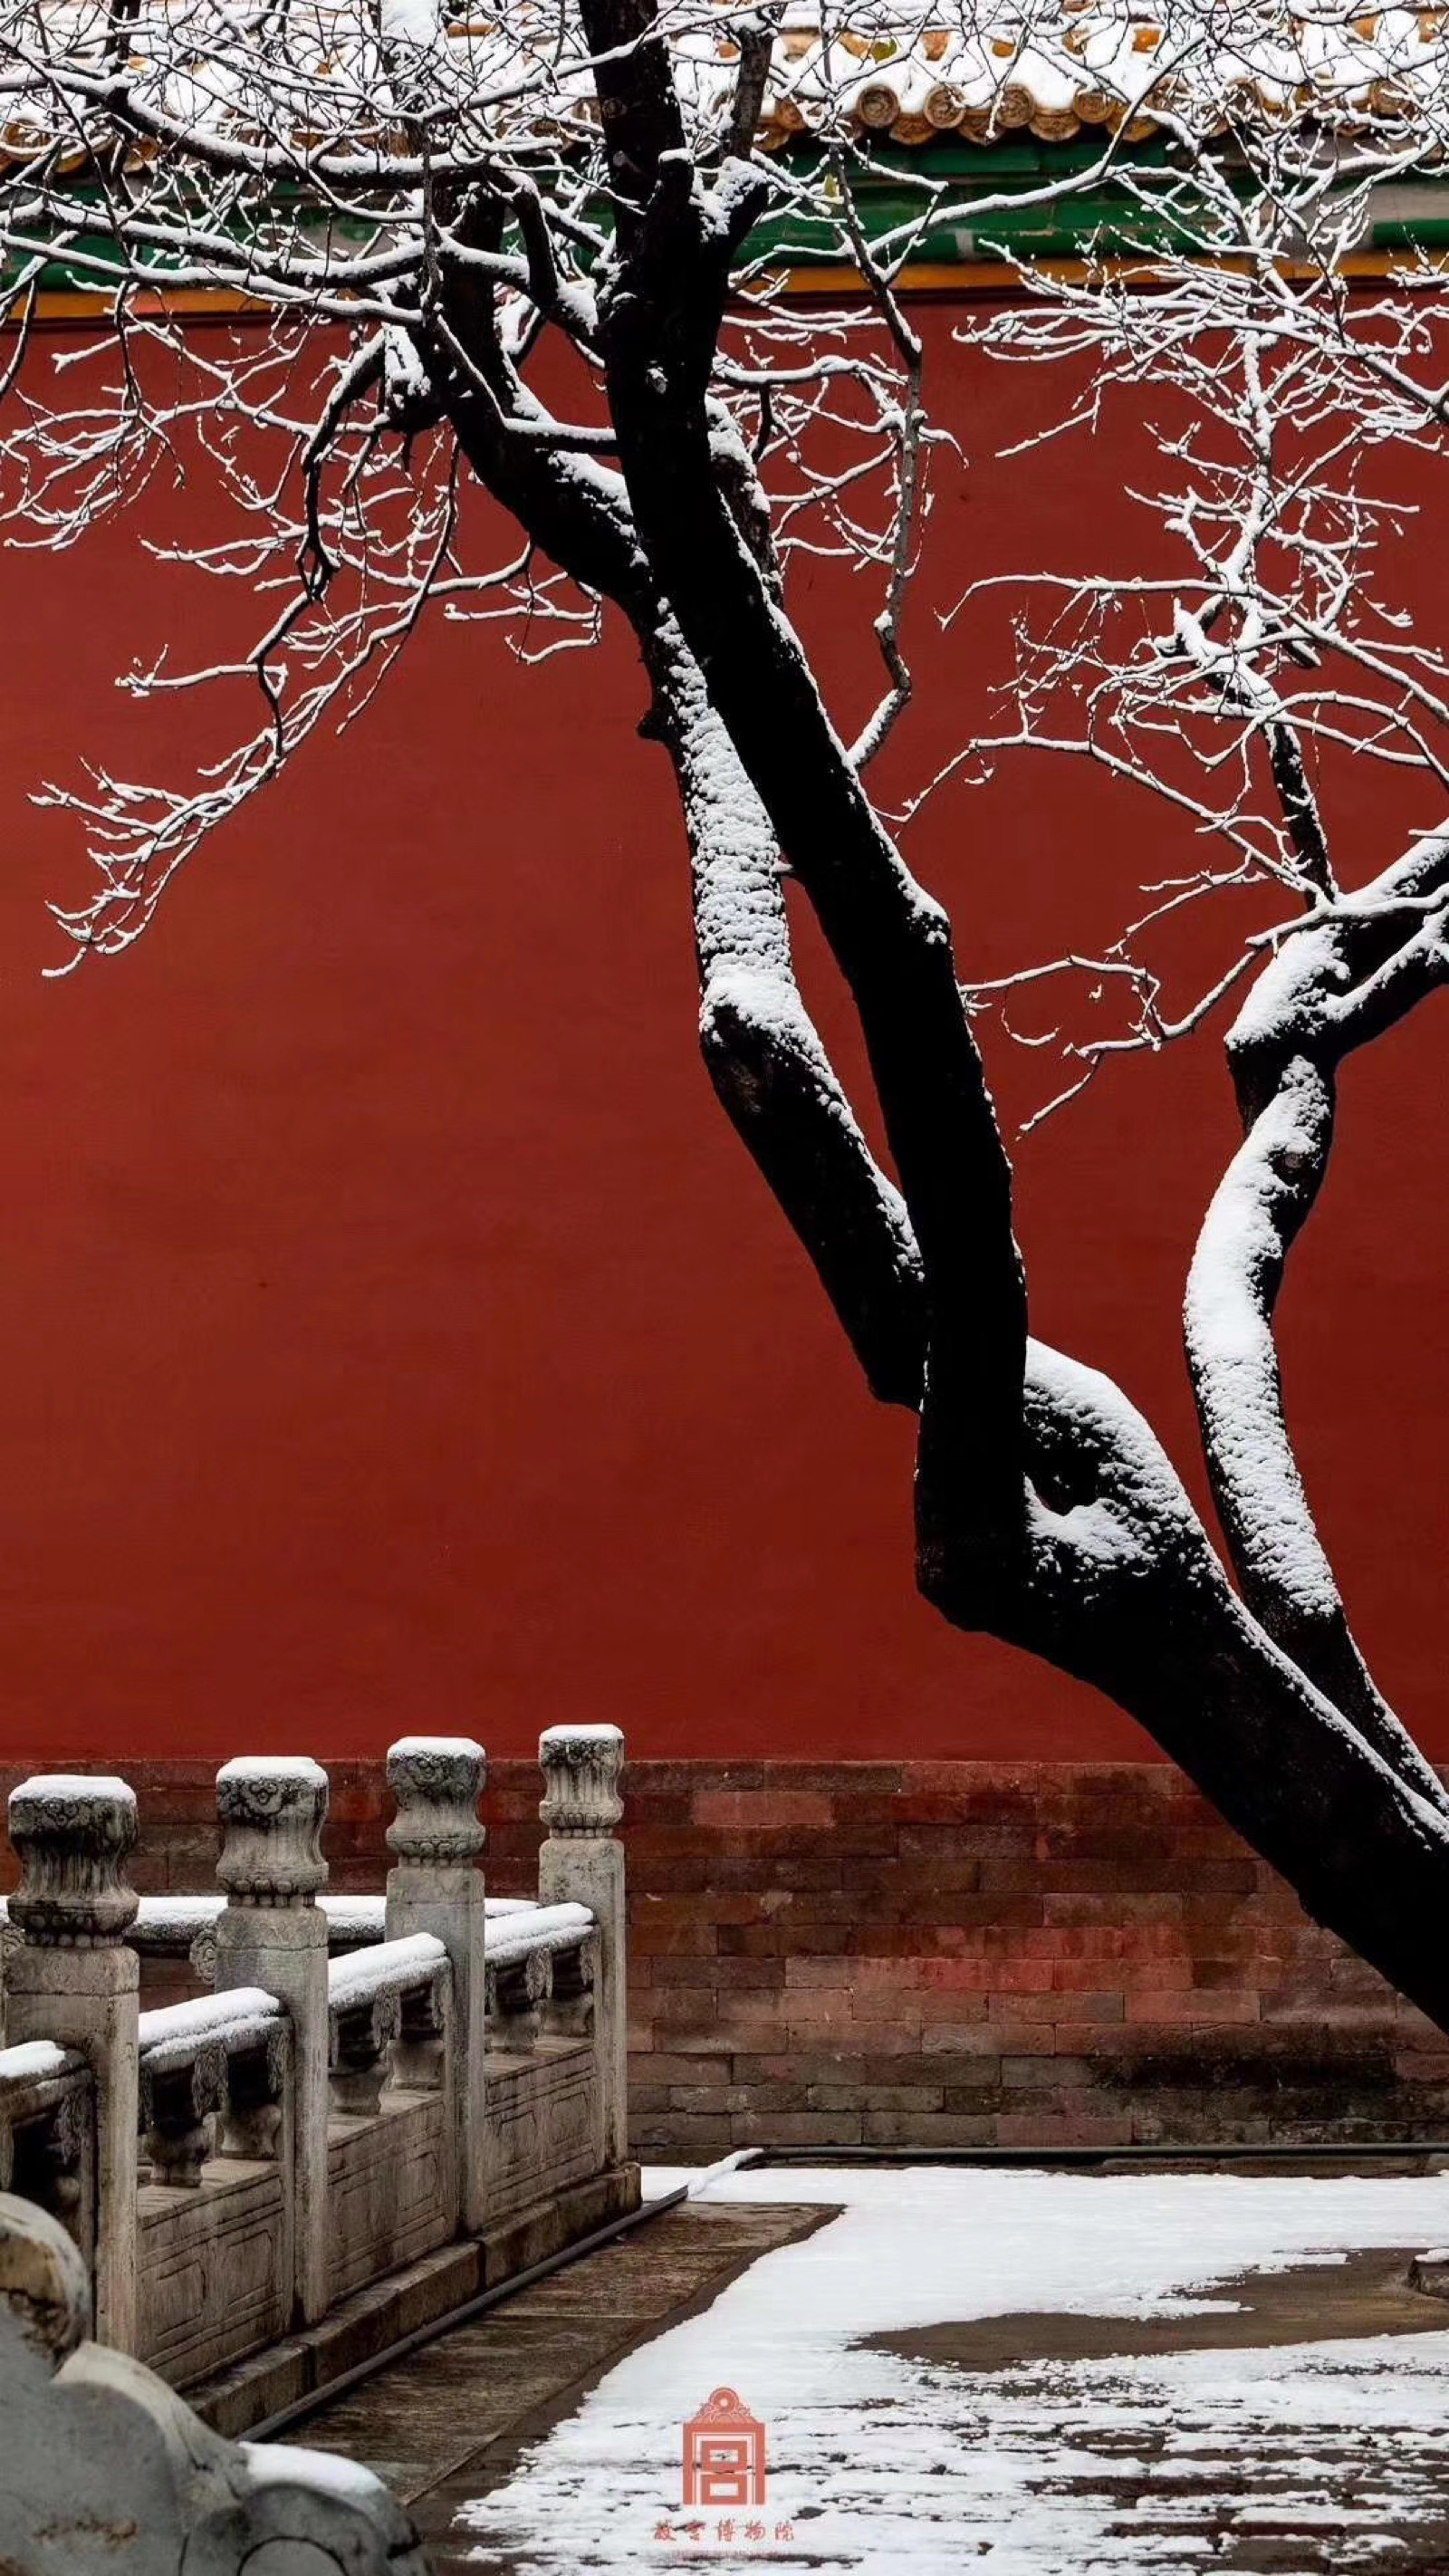 下雪的故宫,红墙琉璃瓦,雪景美不胜收